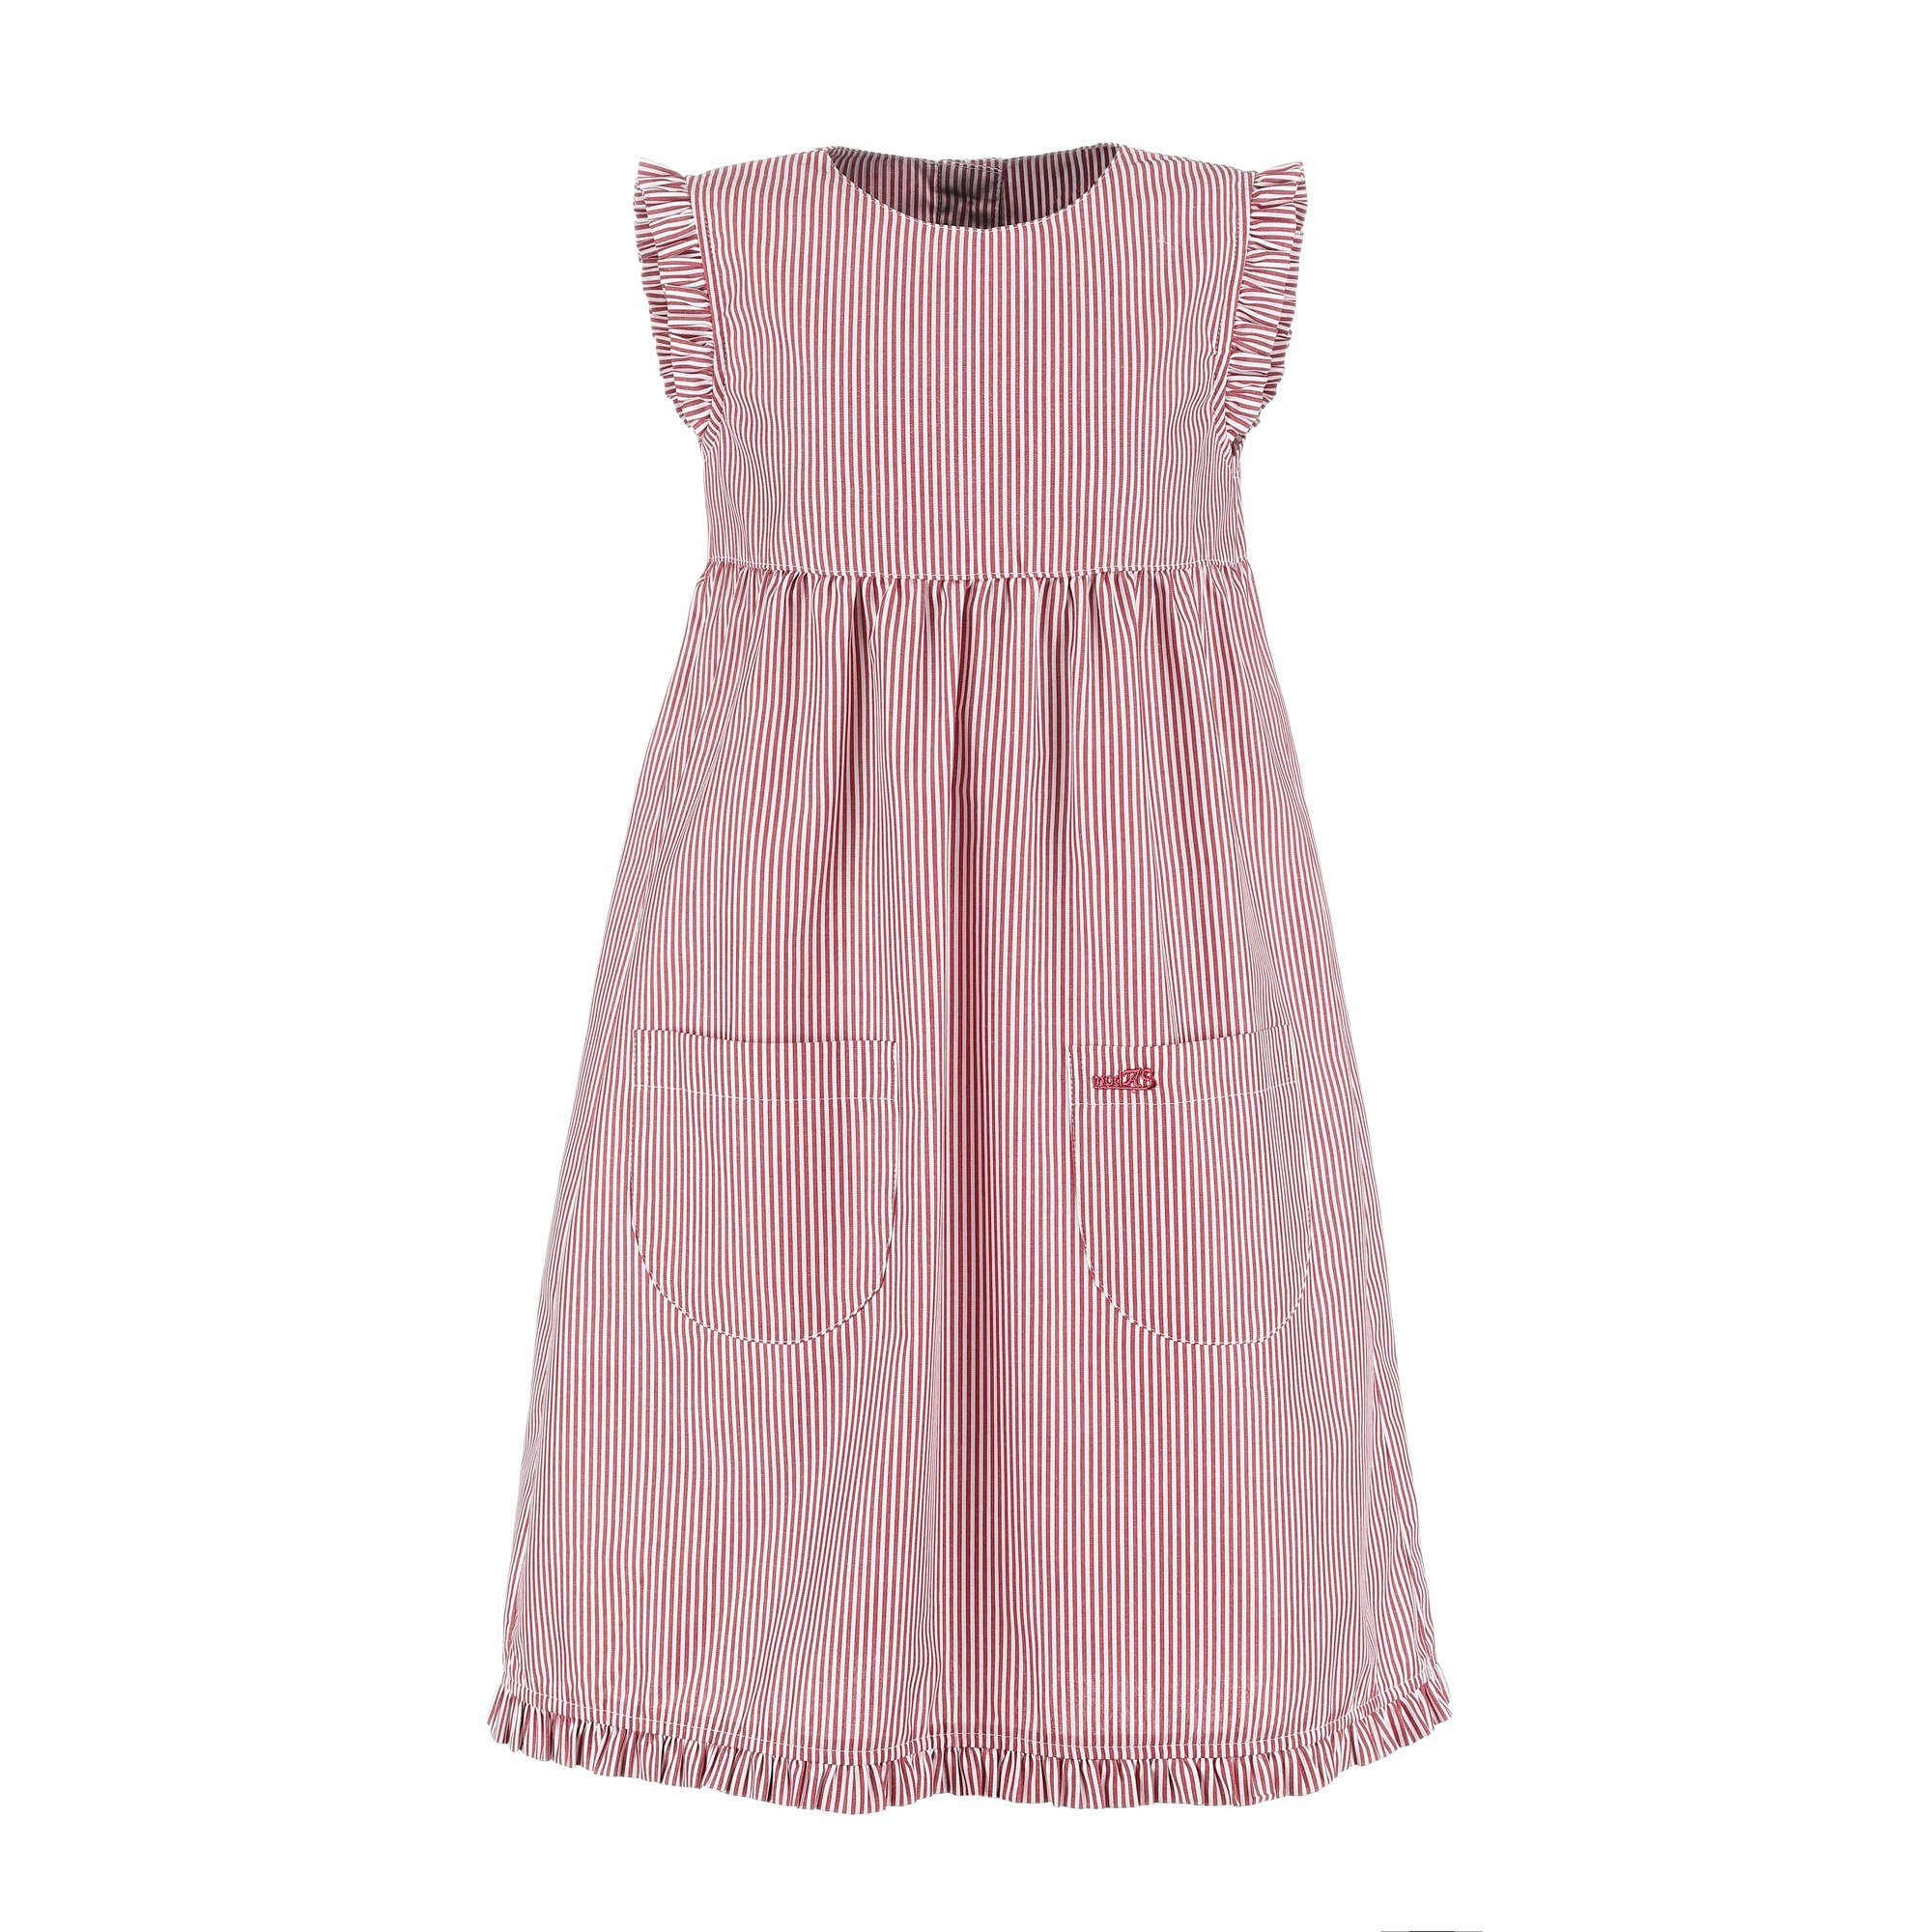 Sommerkleid - Streifen Rüschen Kinder modAS gestreift (023) Mädchenkleid mit mit Kleid gestreift rot/weiß